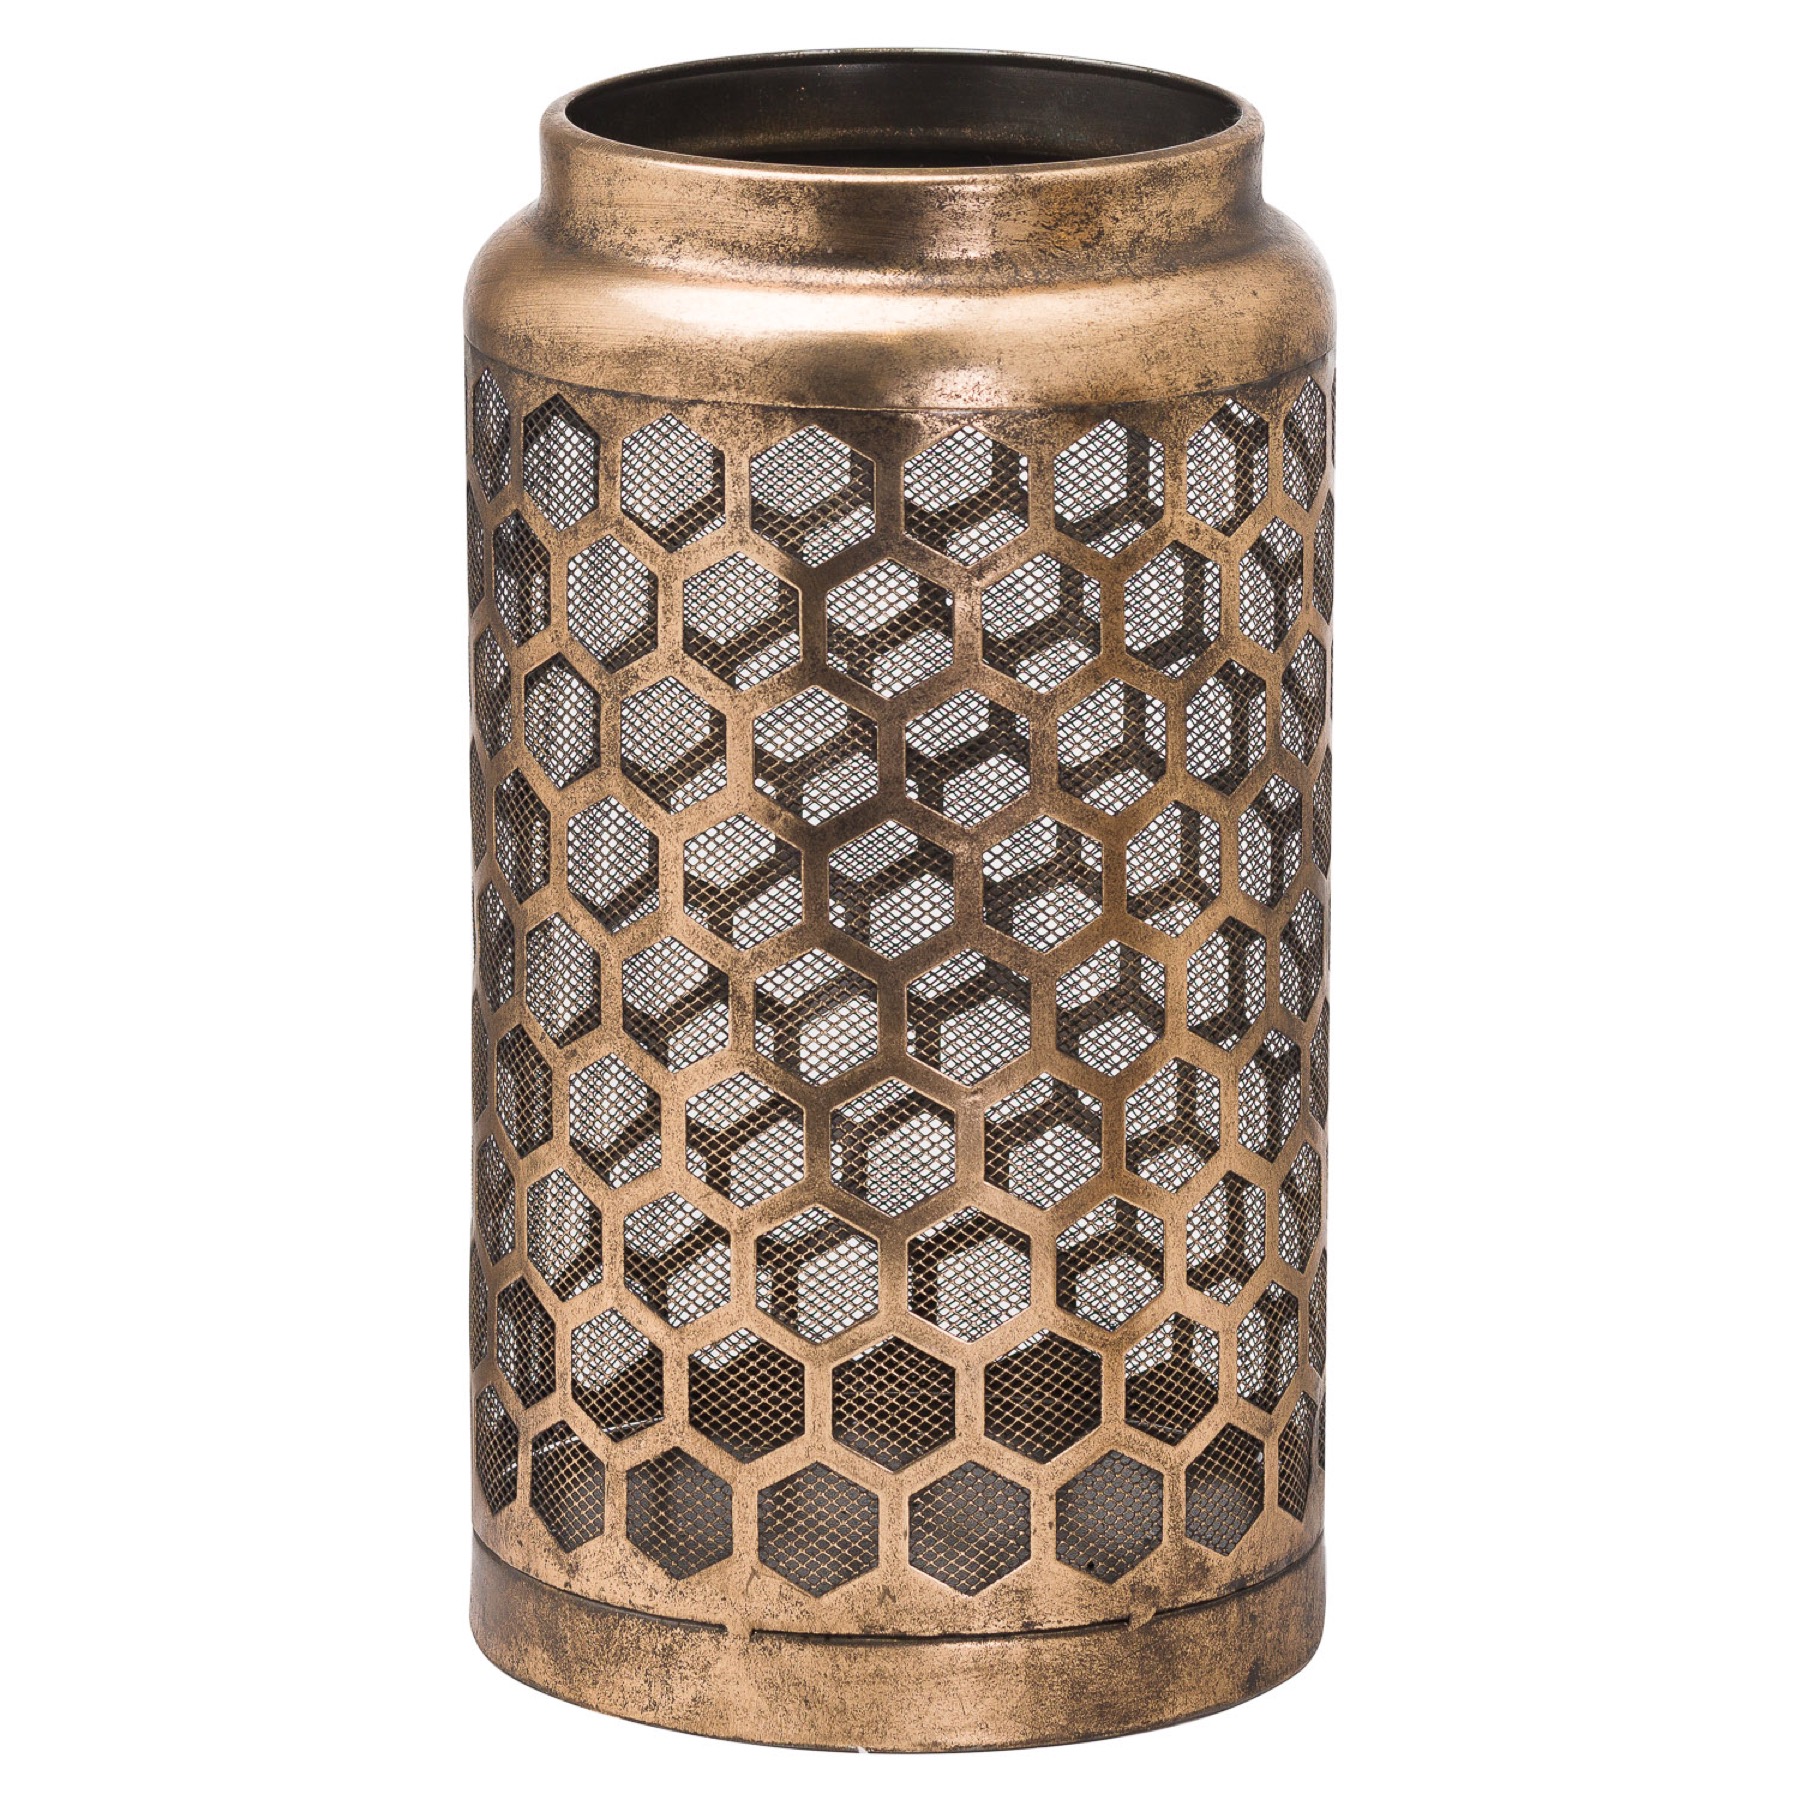 Large Honey Comb Lantern - Image 1